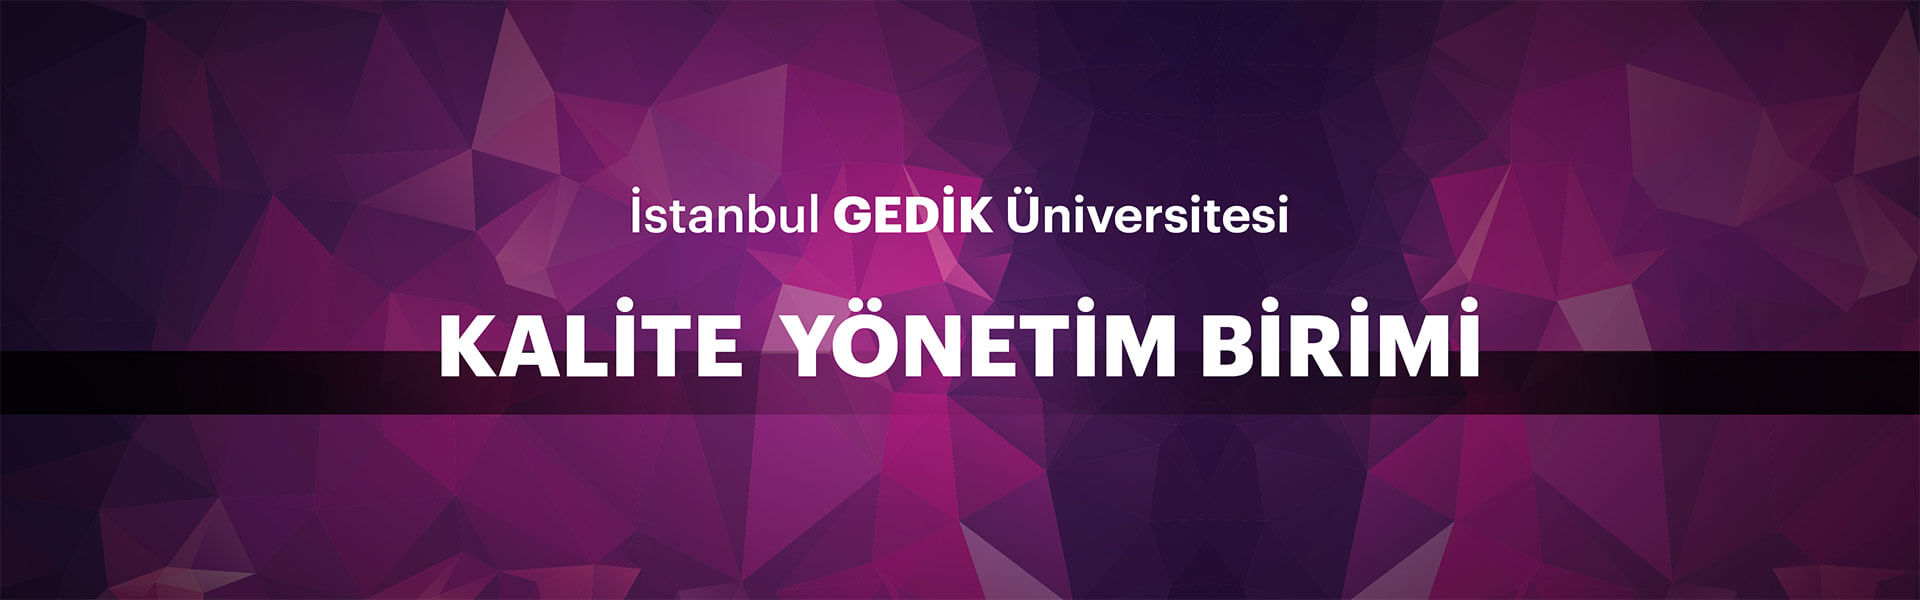 İstanbul Gedik Üniversitesi Kalite Yönetim Birimi Carousel